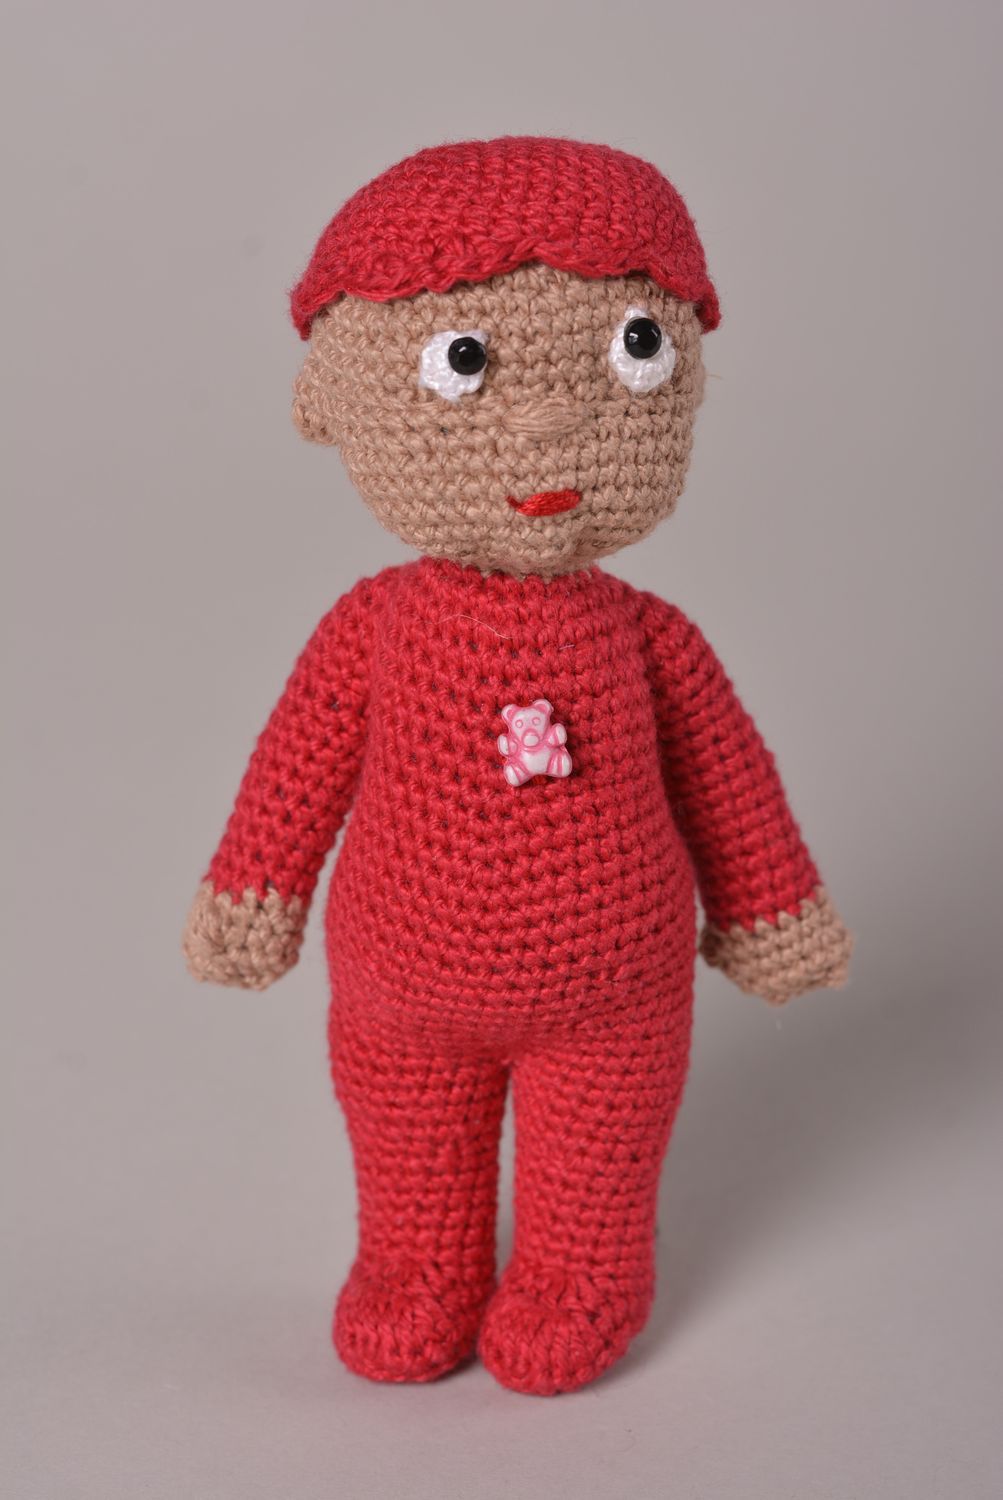 Handmade gehäkelte Puppe ausgefallenes Spielzeug Geschenkidee für Mädchen rot foto 1